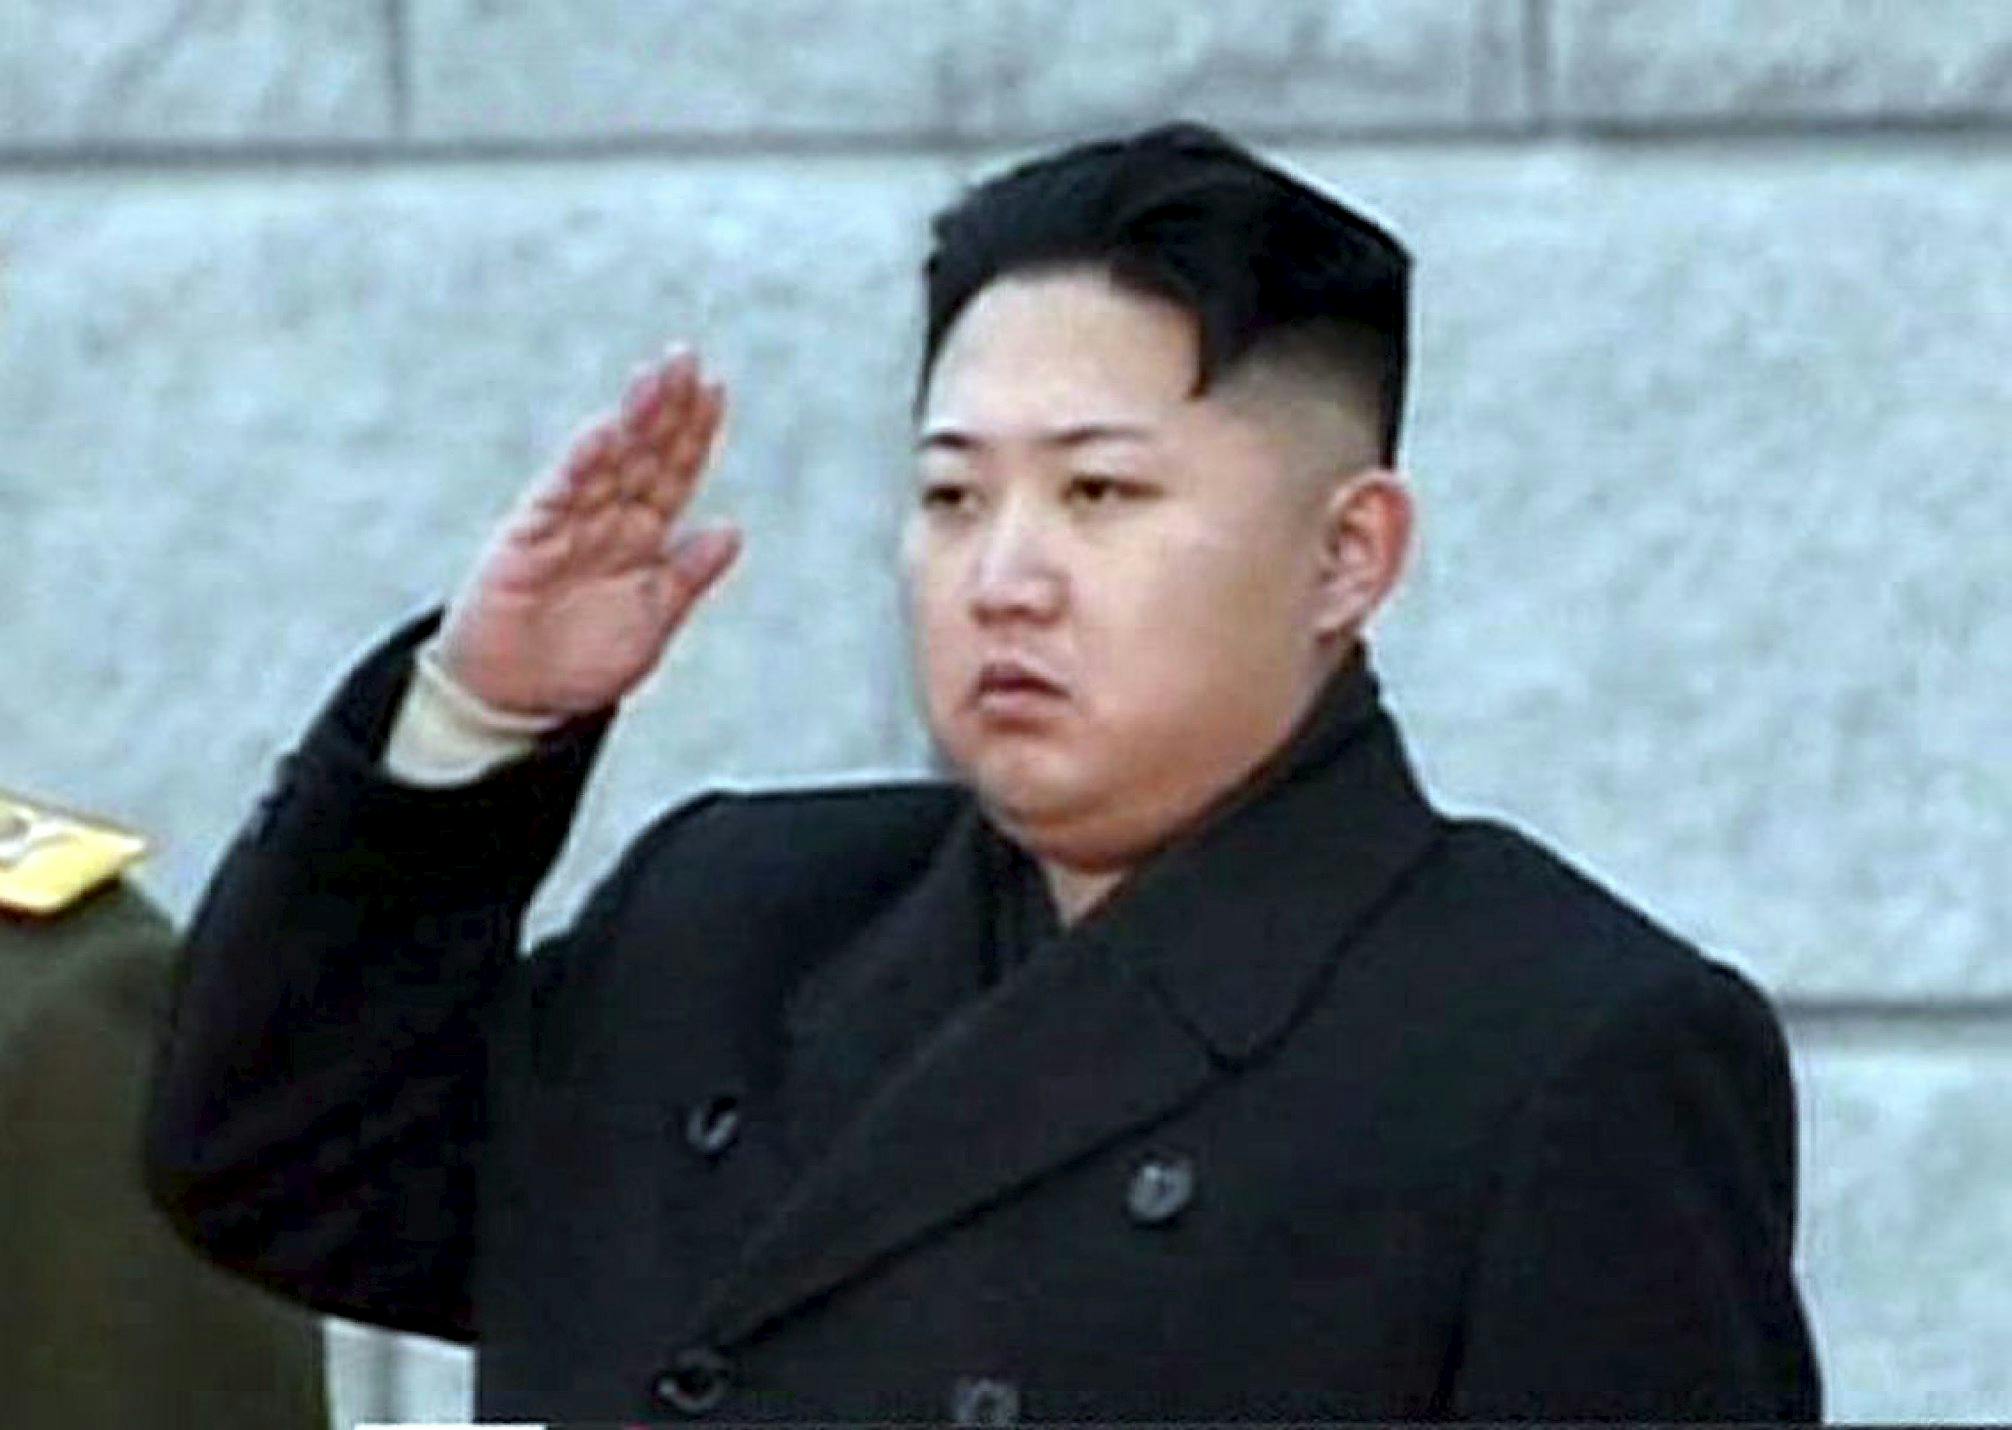  Den nordkoreanske diktator, Kim Jong-un, bliver nok svær at lokke i biografen